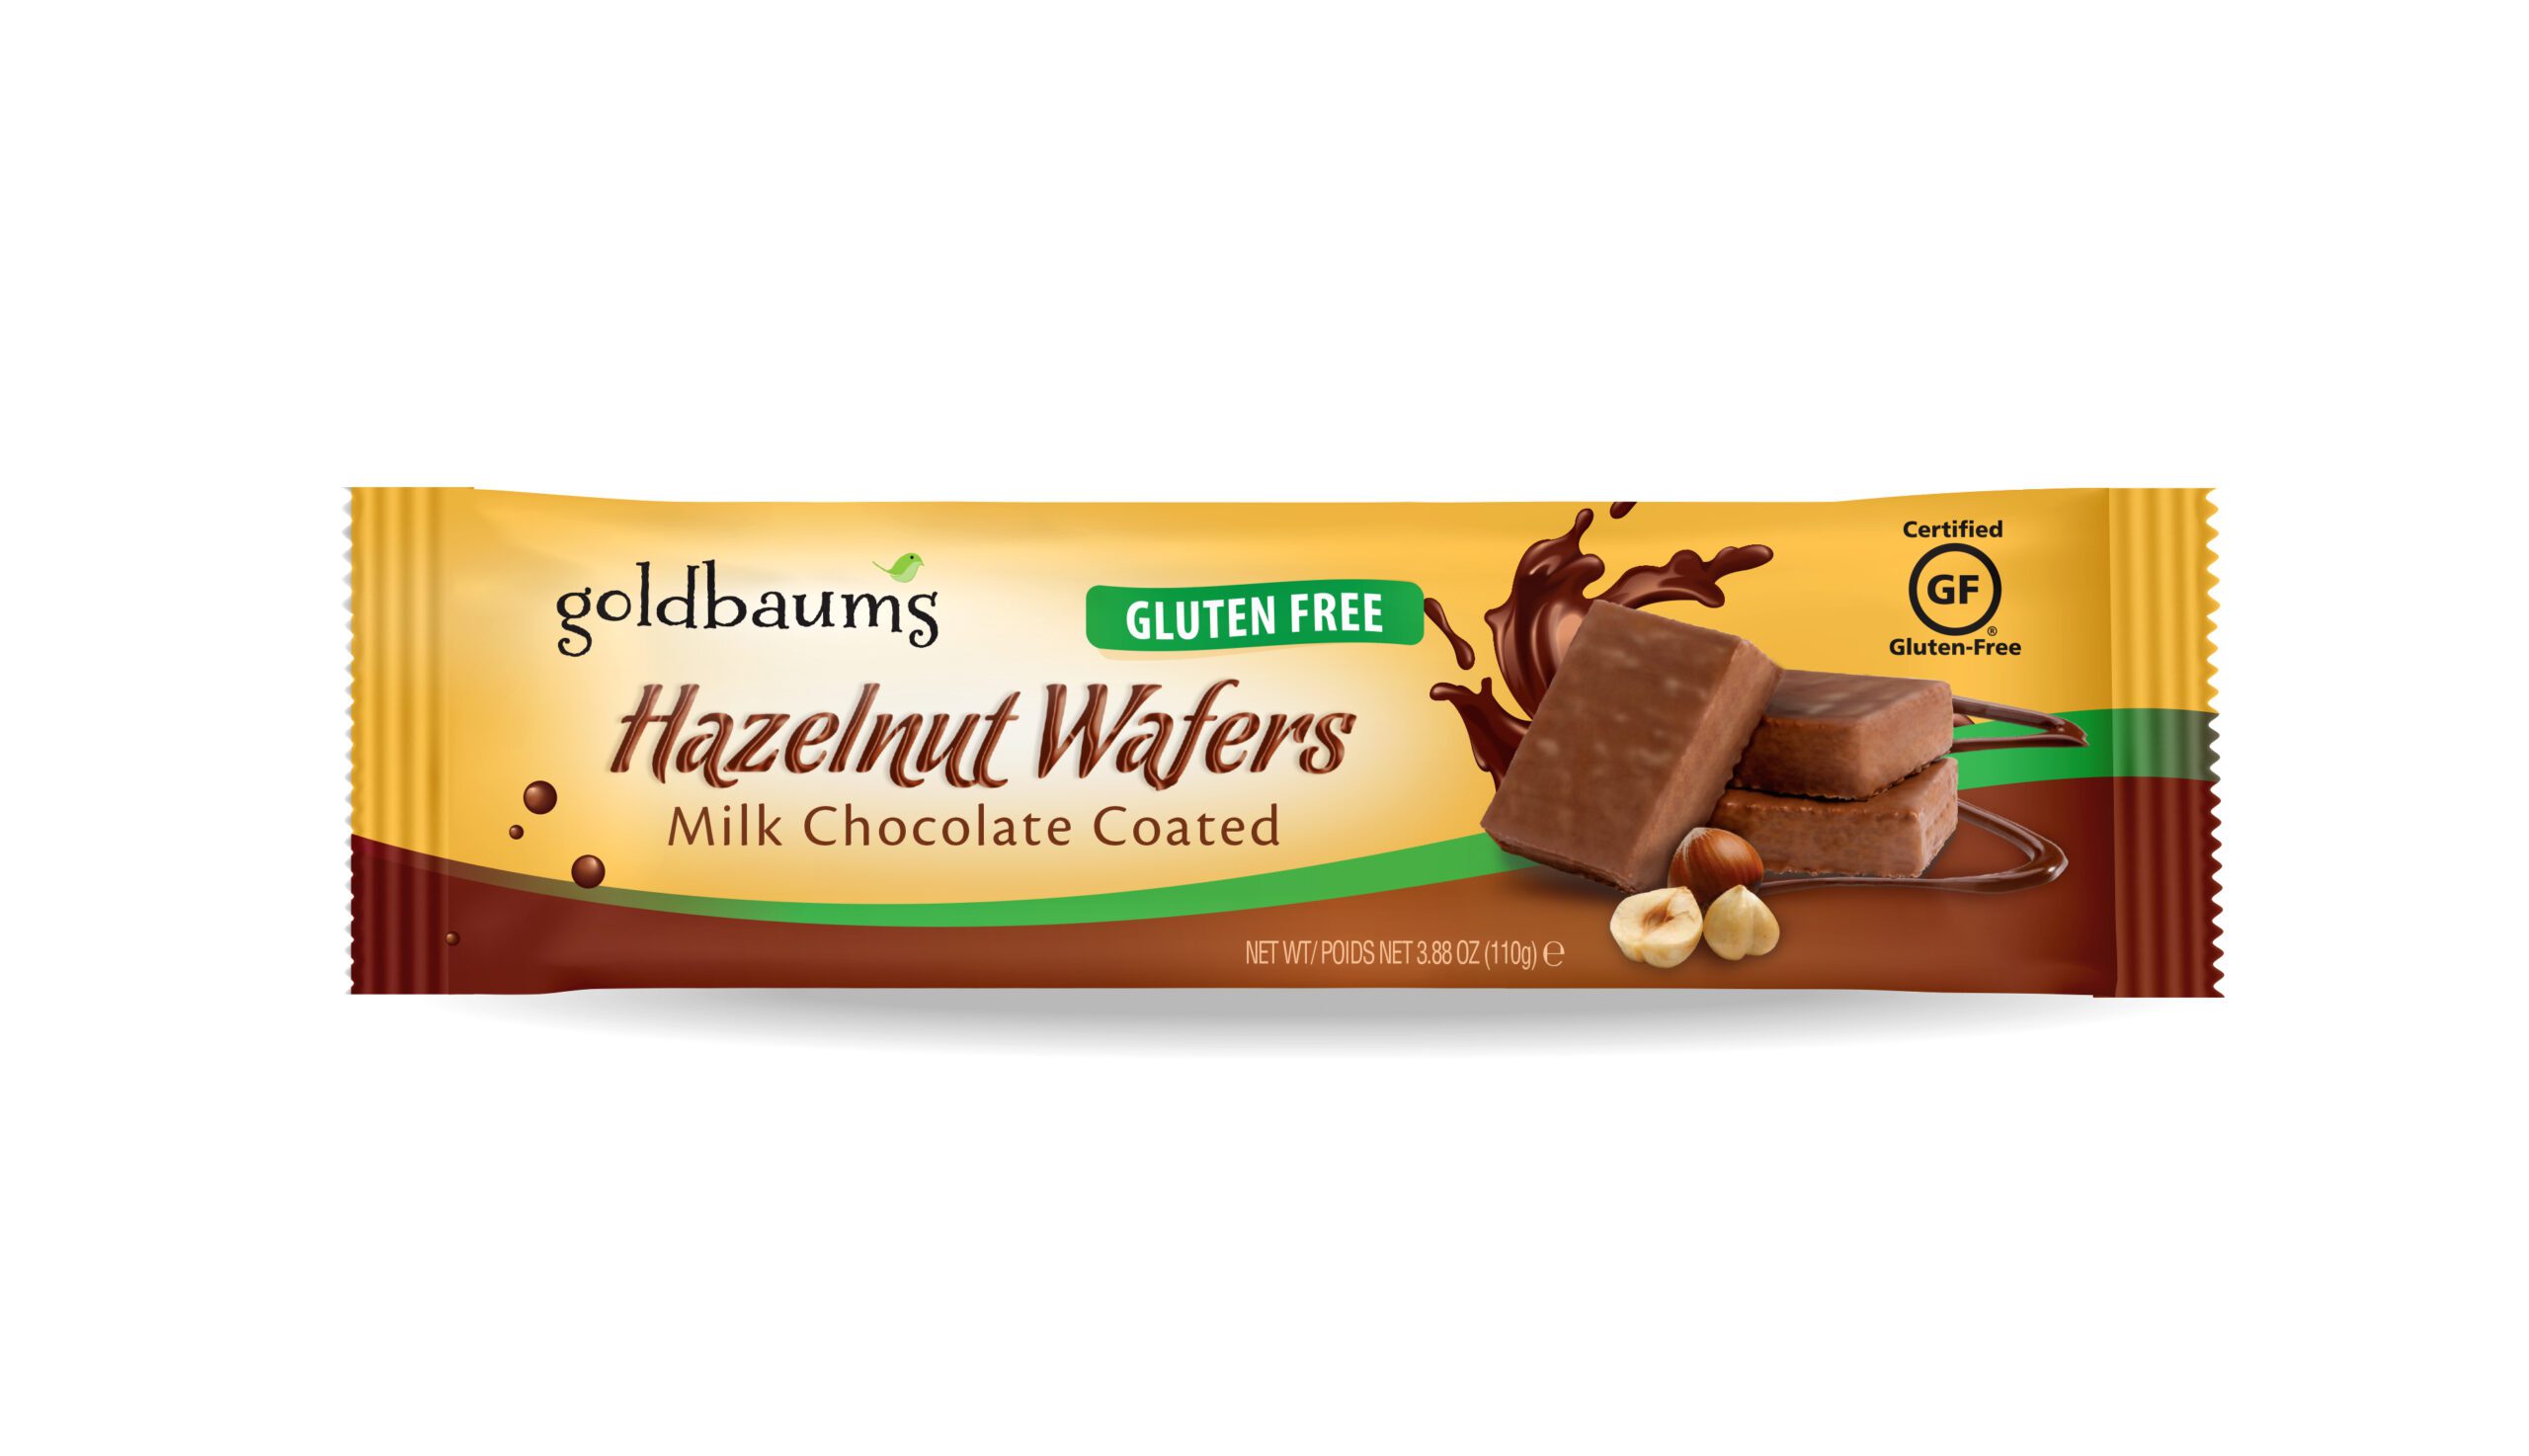 GOLDBAUMS CHOCOLATE COATED HAZELNUT WAFERS